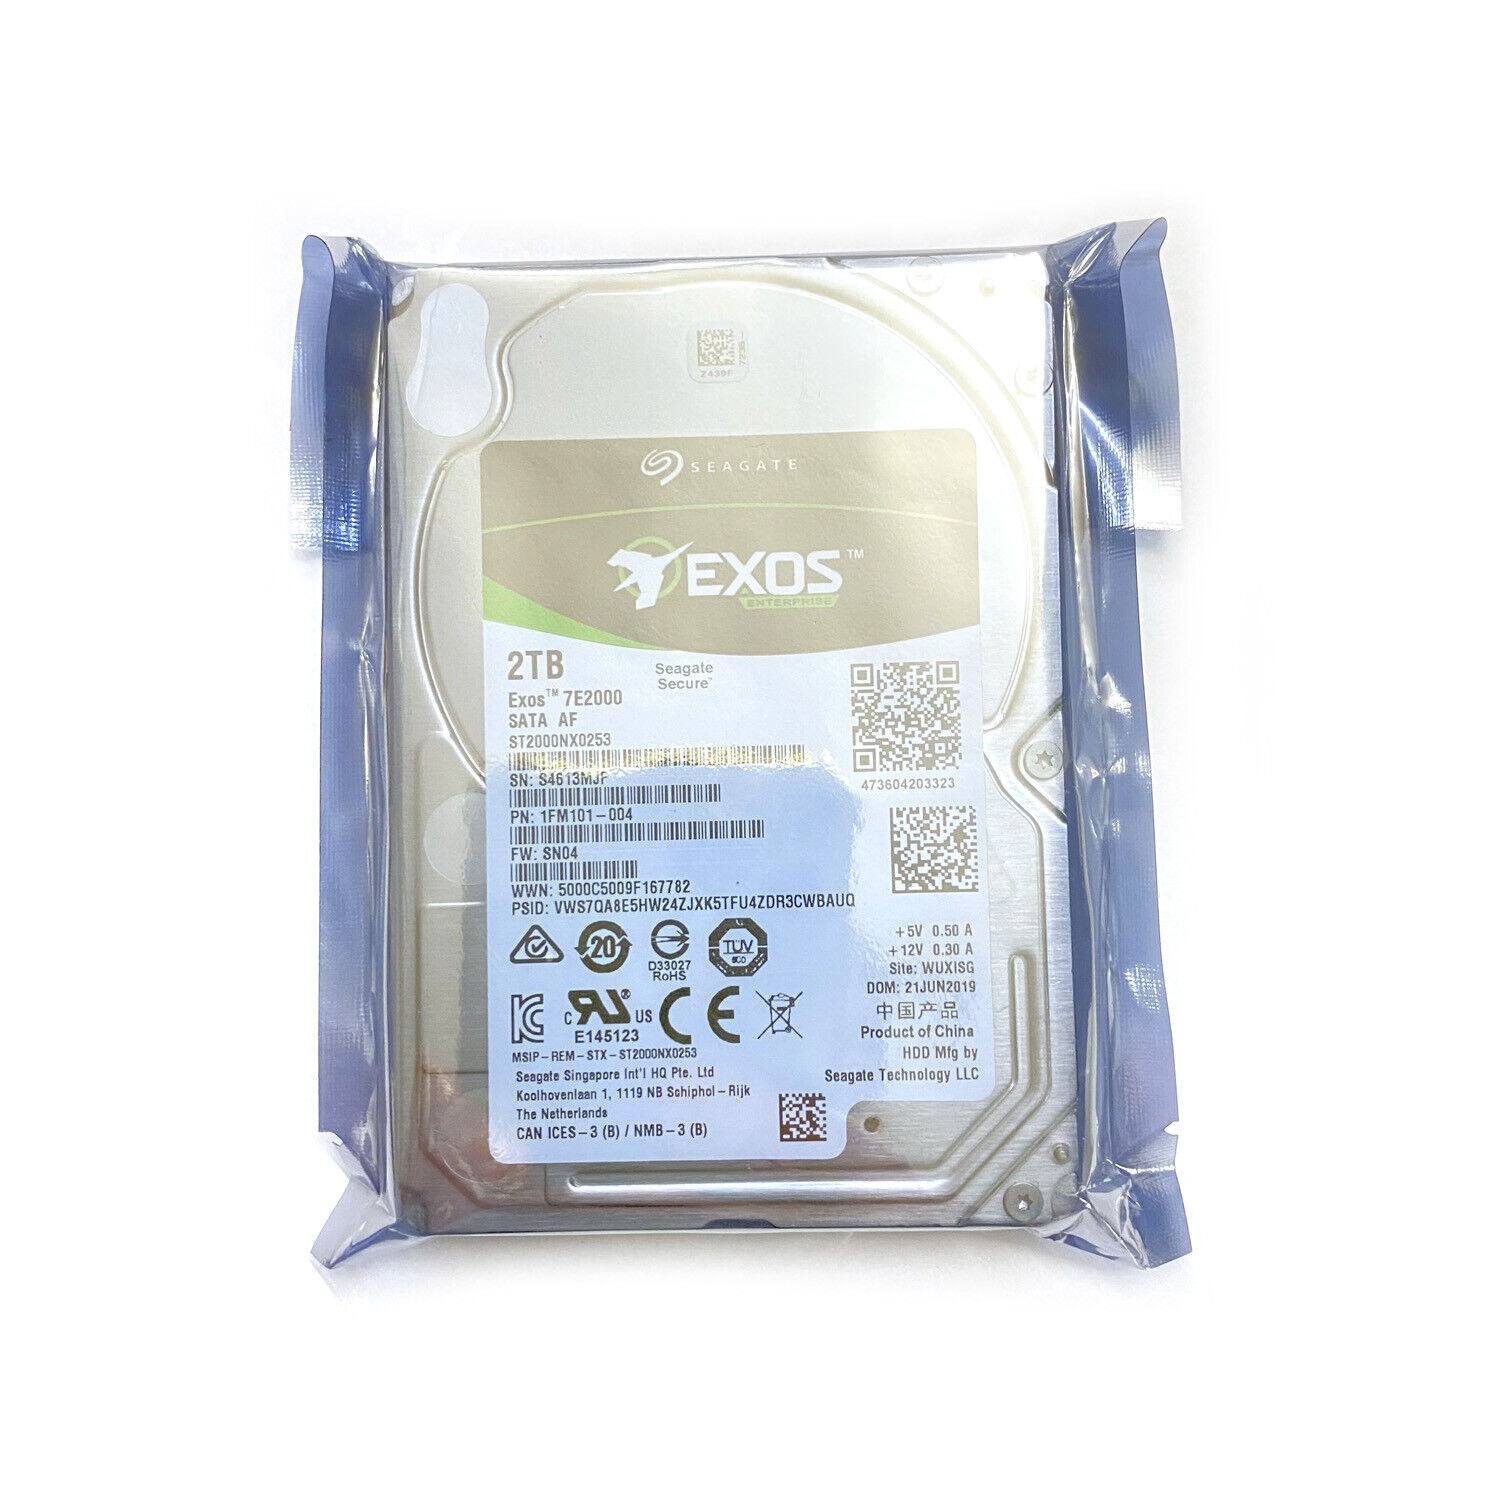 Seagate ST2000NX0253 Exos 7E2000 2TB SATA 6Gb/s 7200 RPM 2.5” Hard Drive HDD